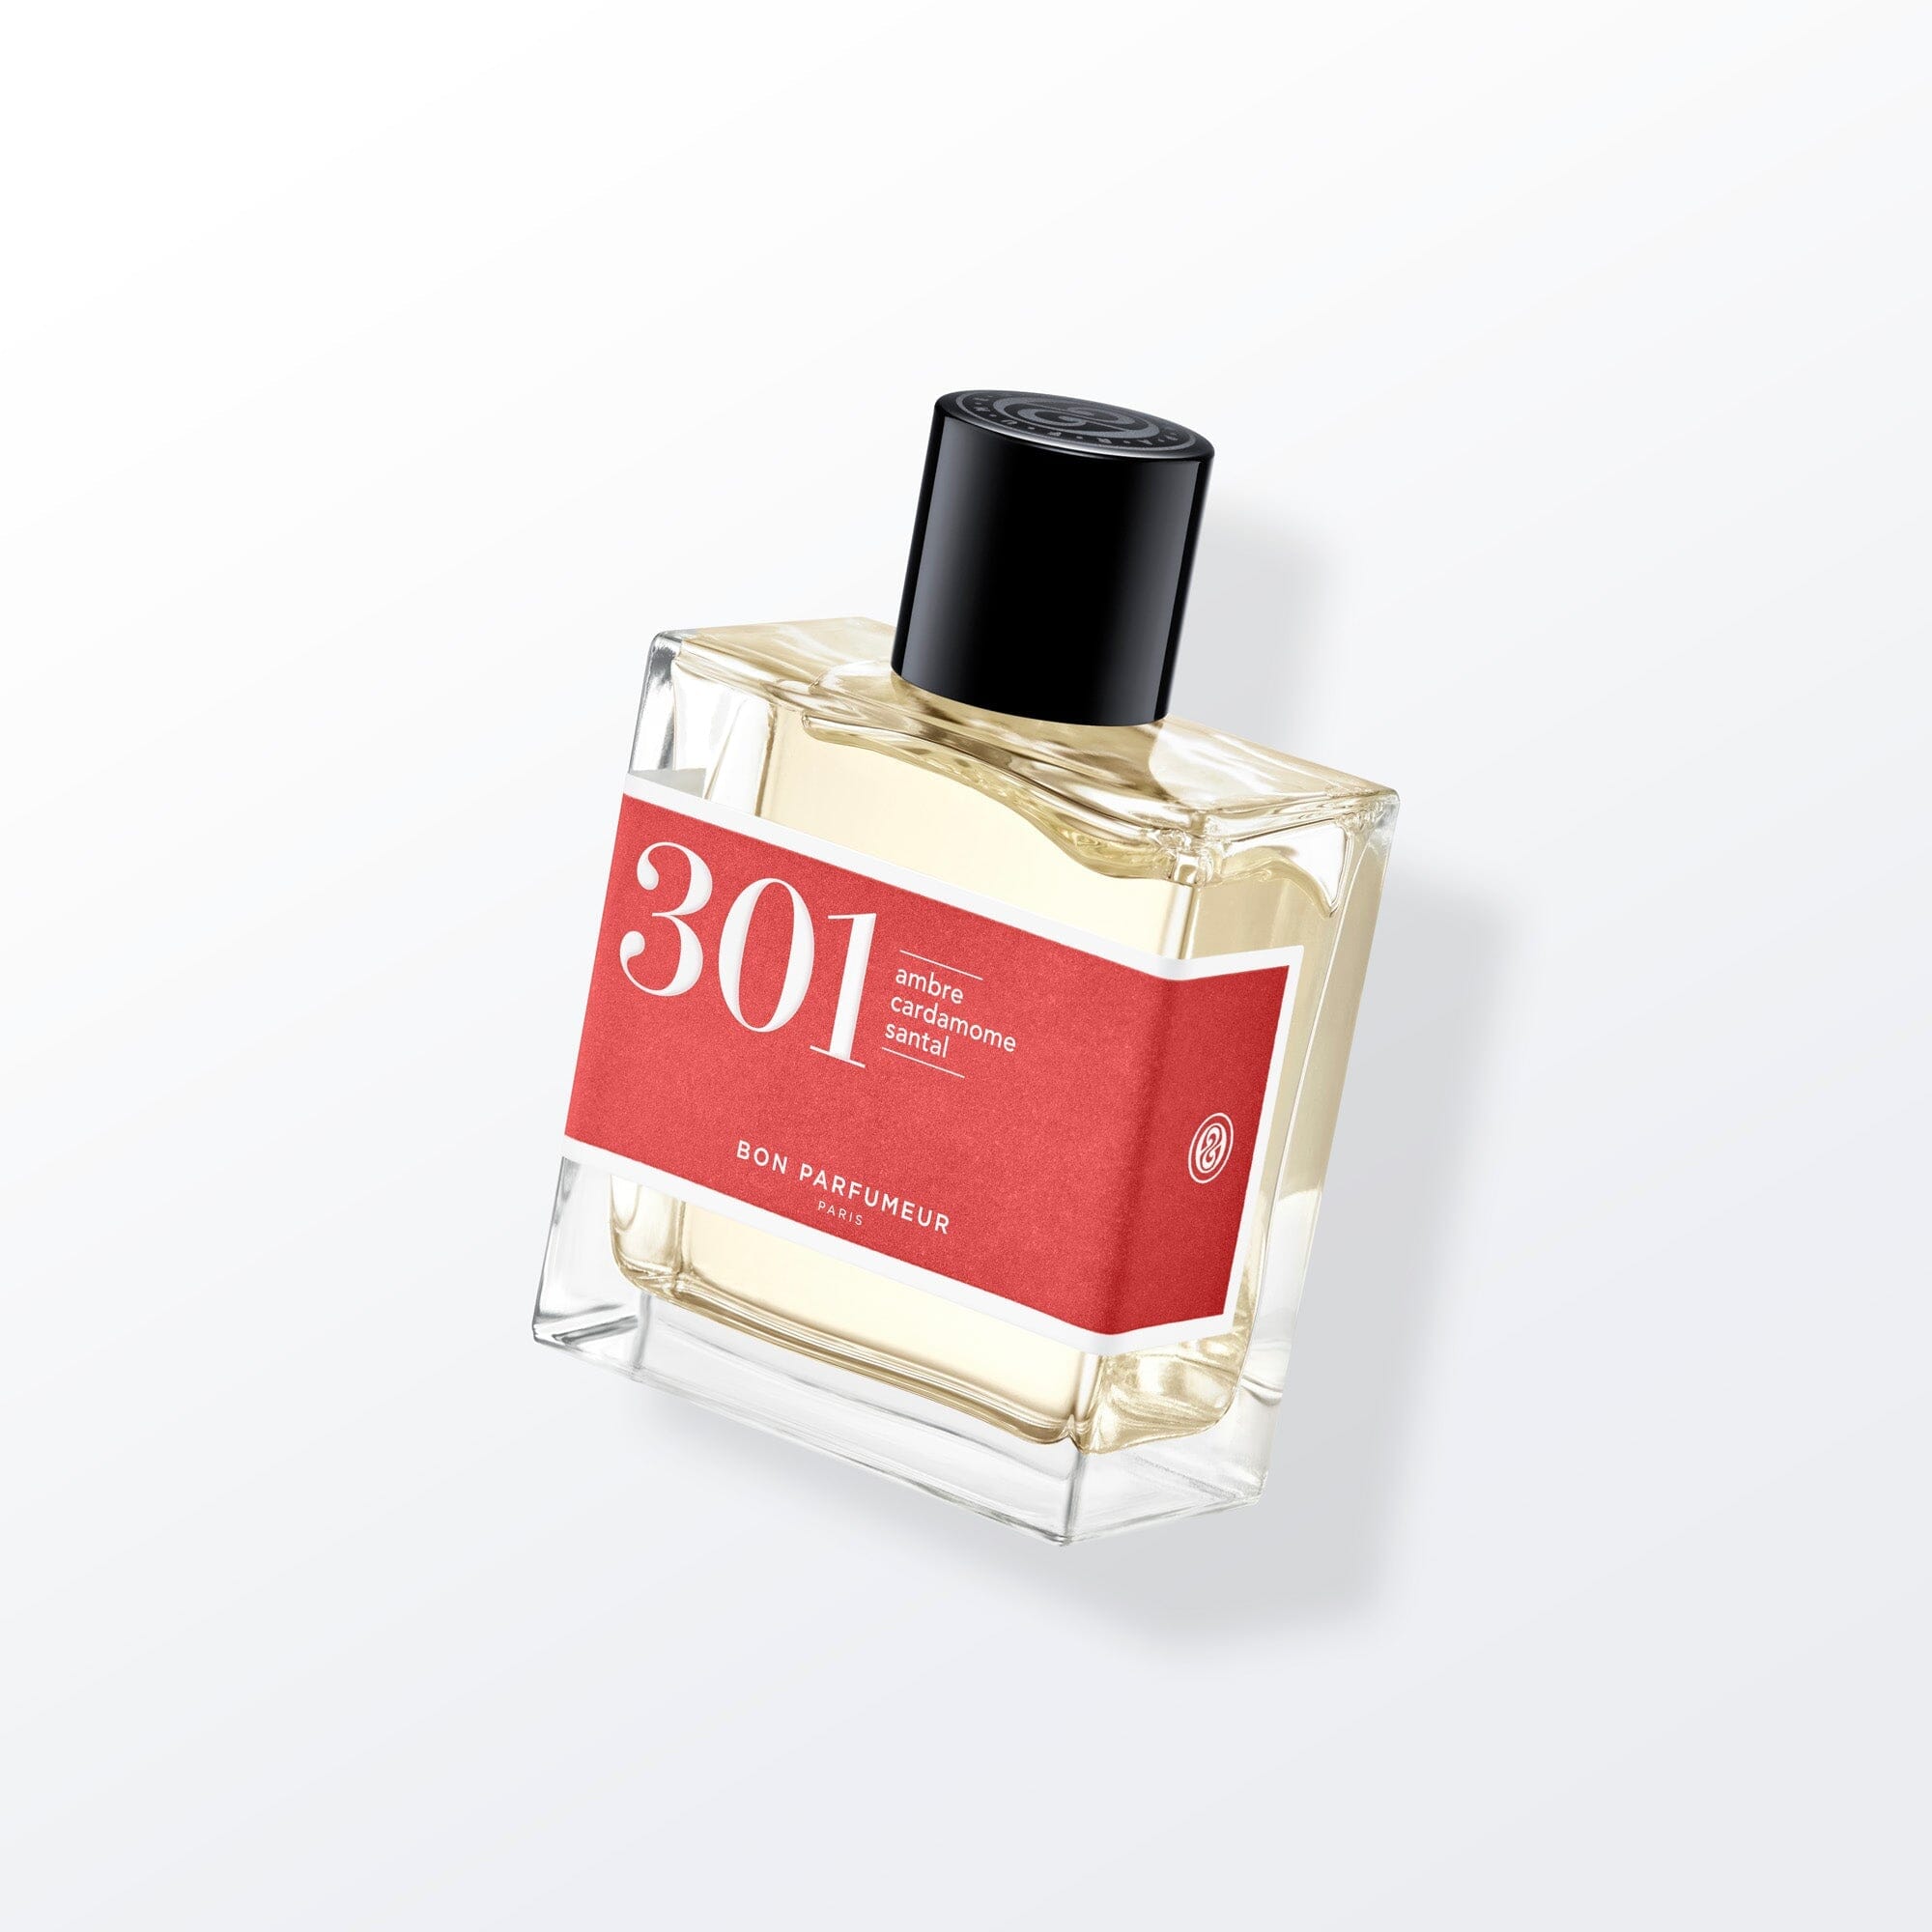 Eau de parfum 301 à l'ambre, à la cardamome et au santal Eau de parfum Bon Parfumeur France 